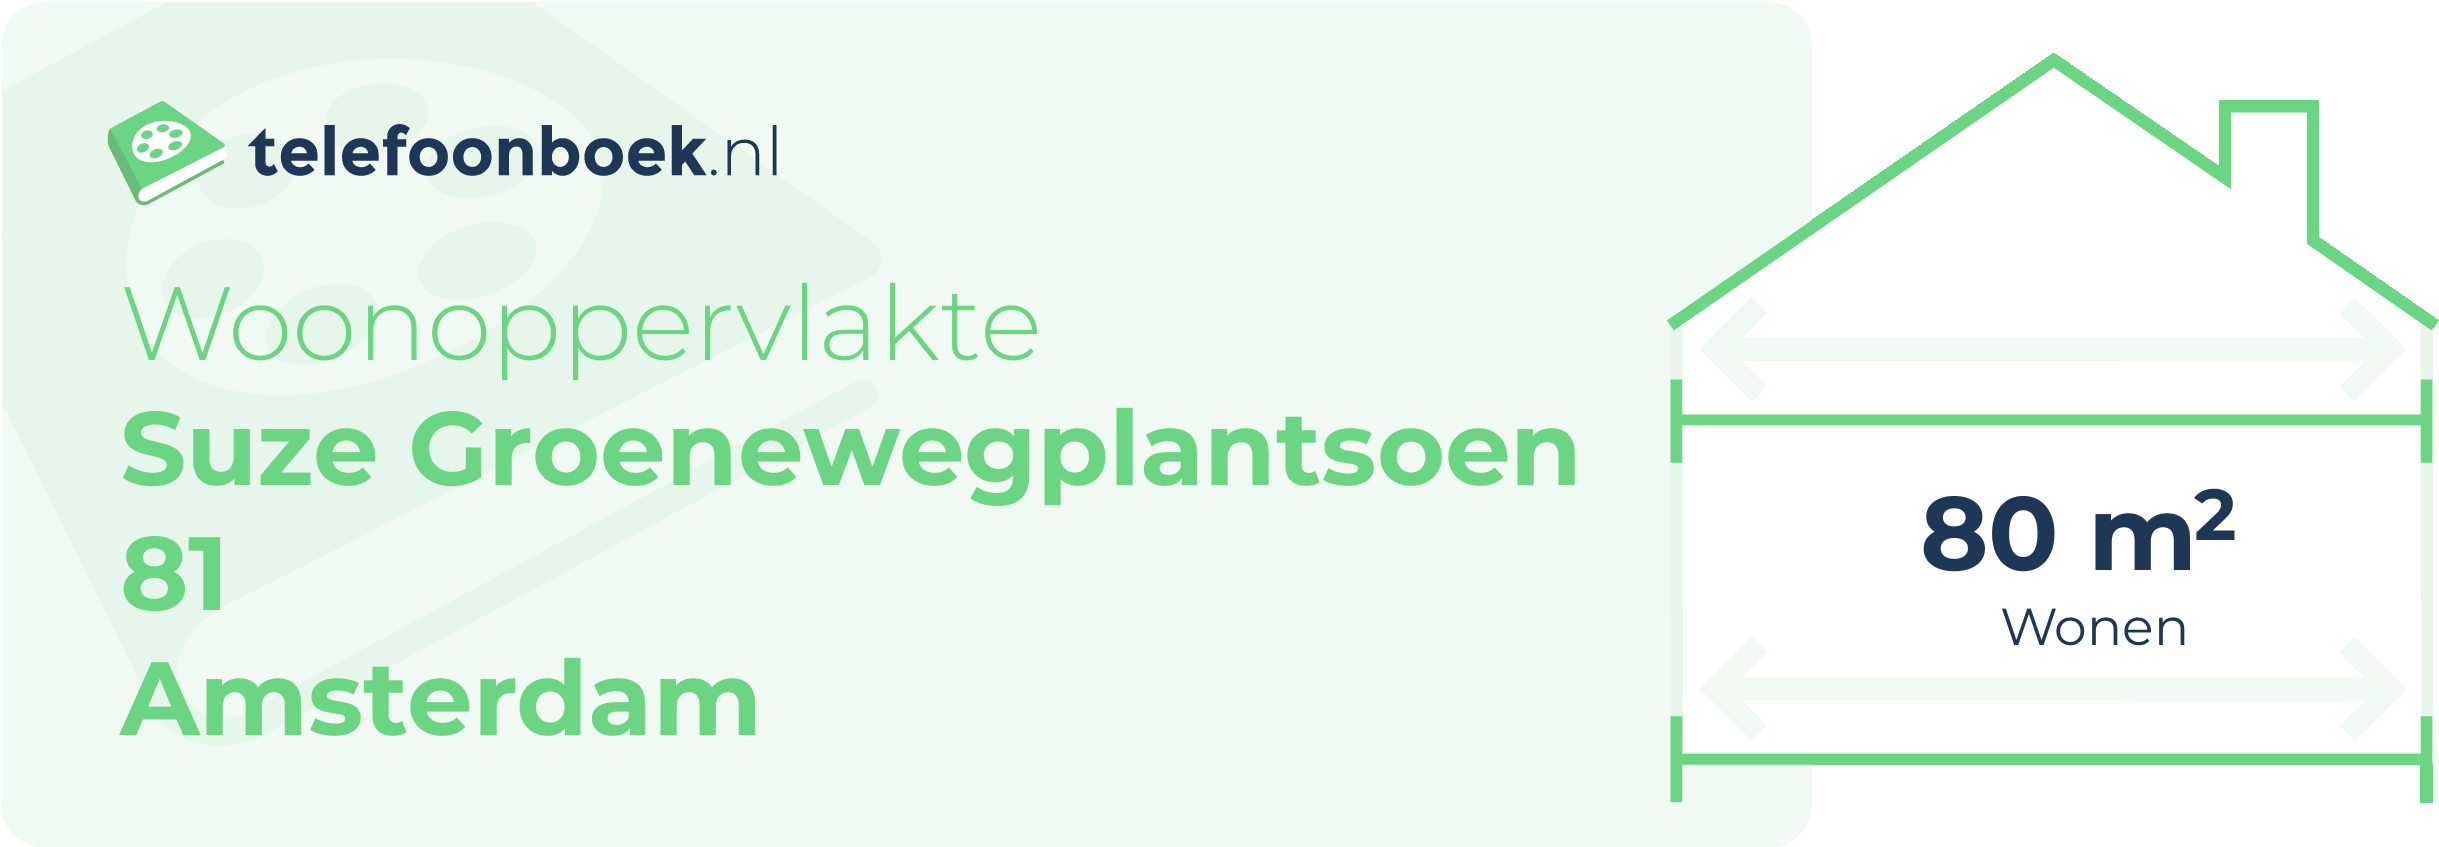 Woonoppervlakte Suze Groenewegplantsoen 81 Amsterdam